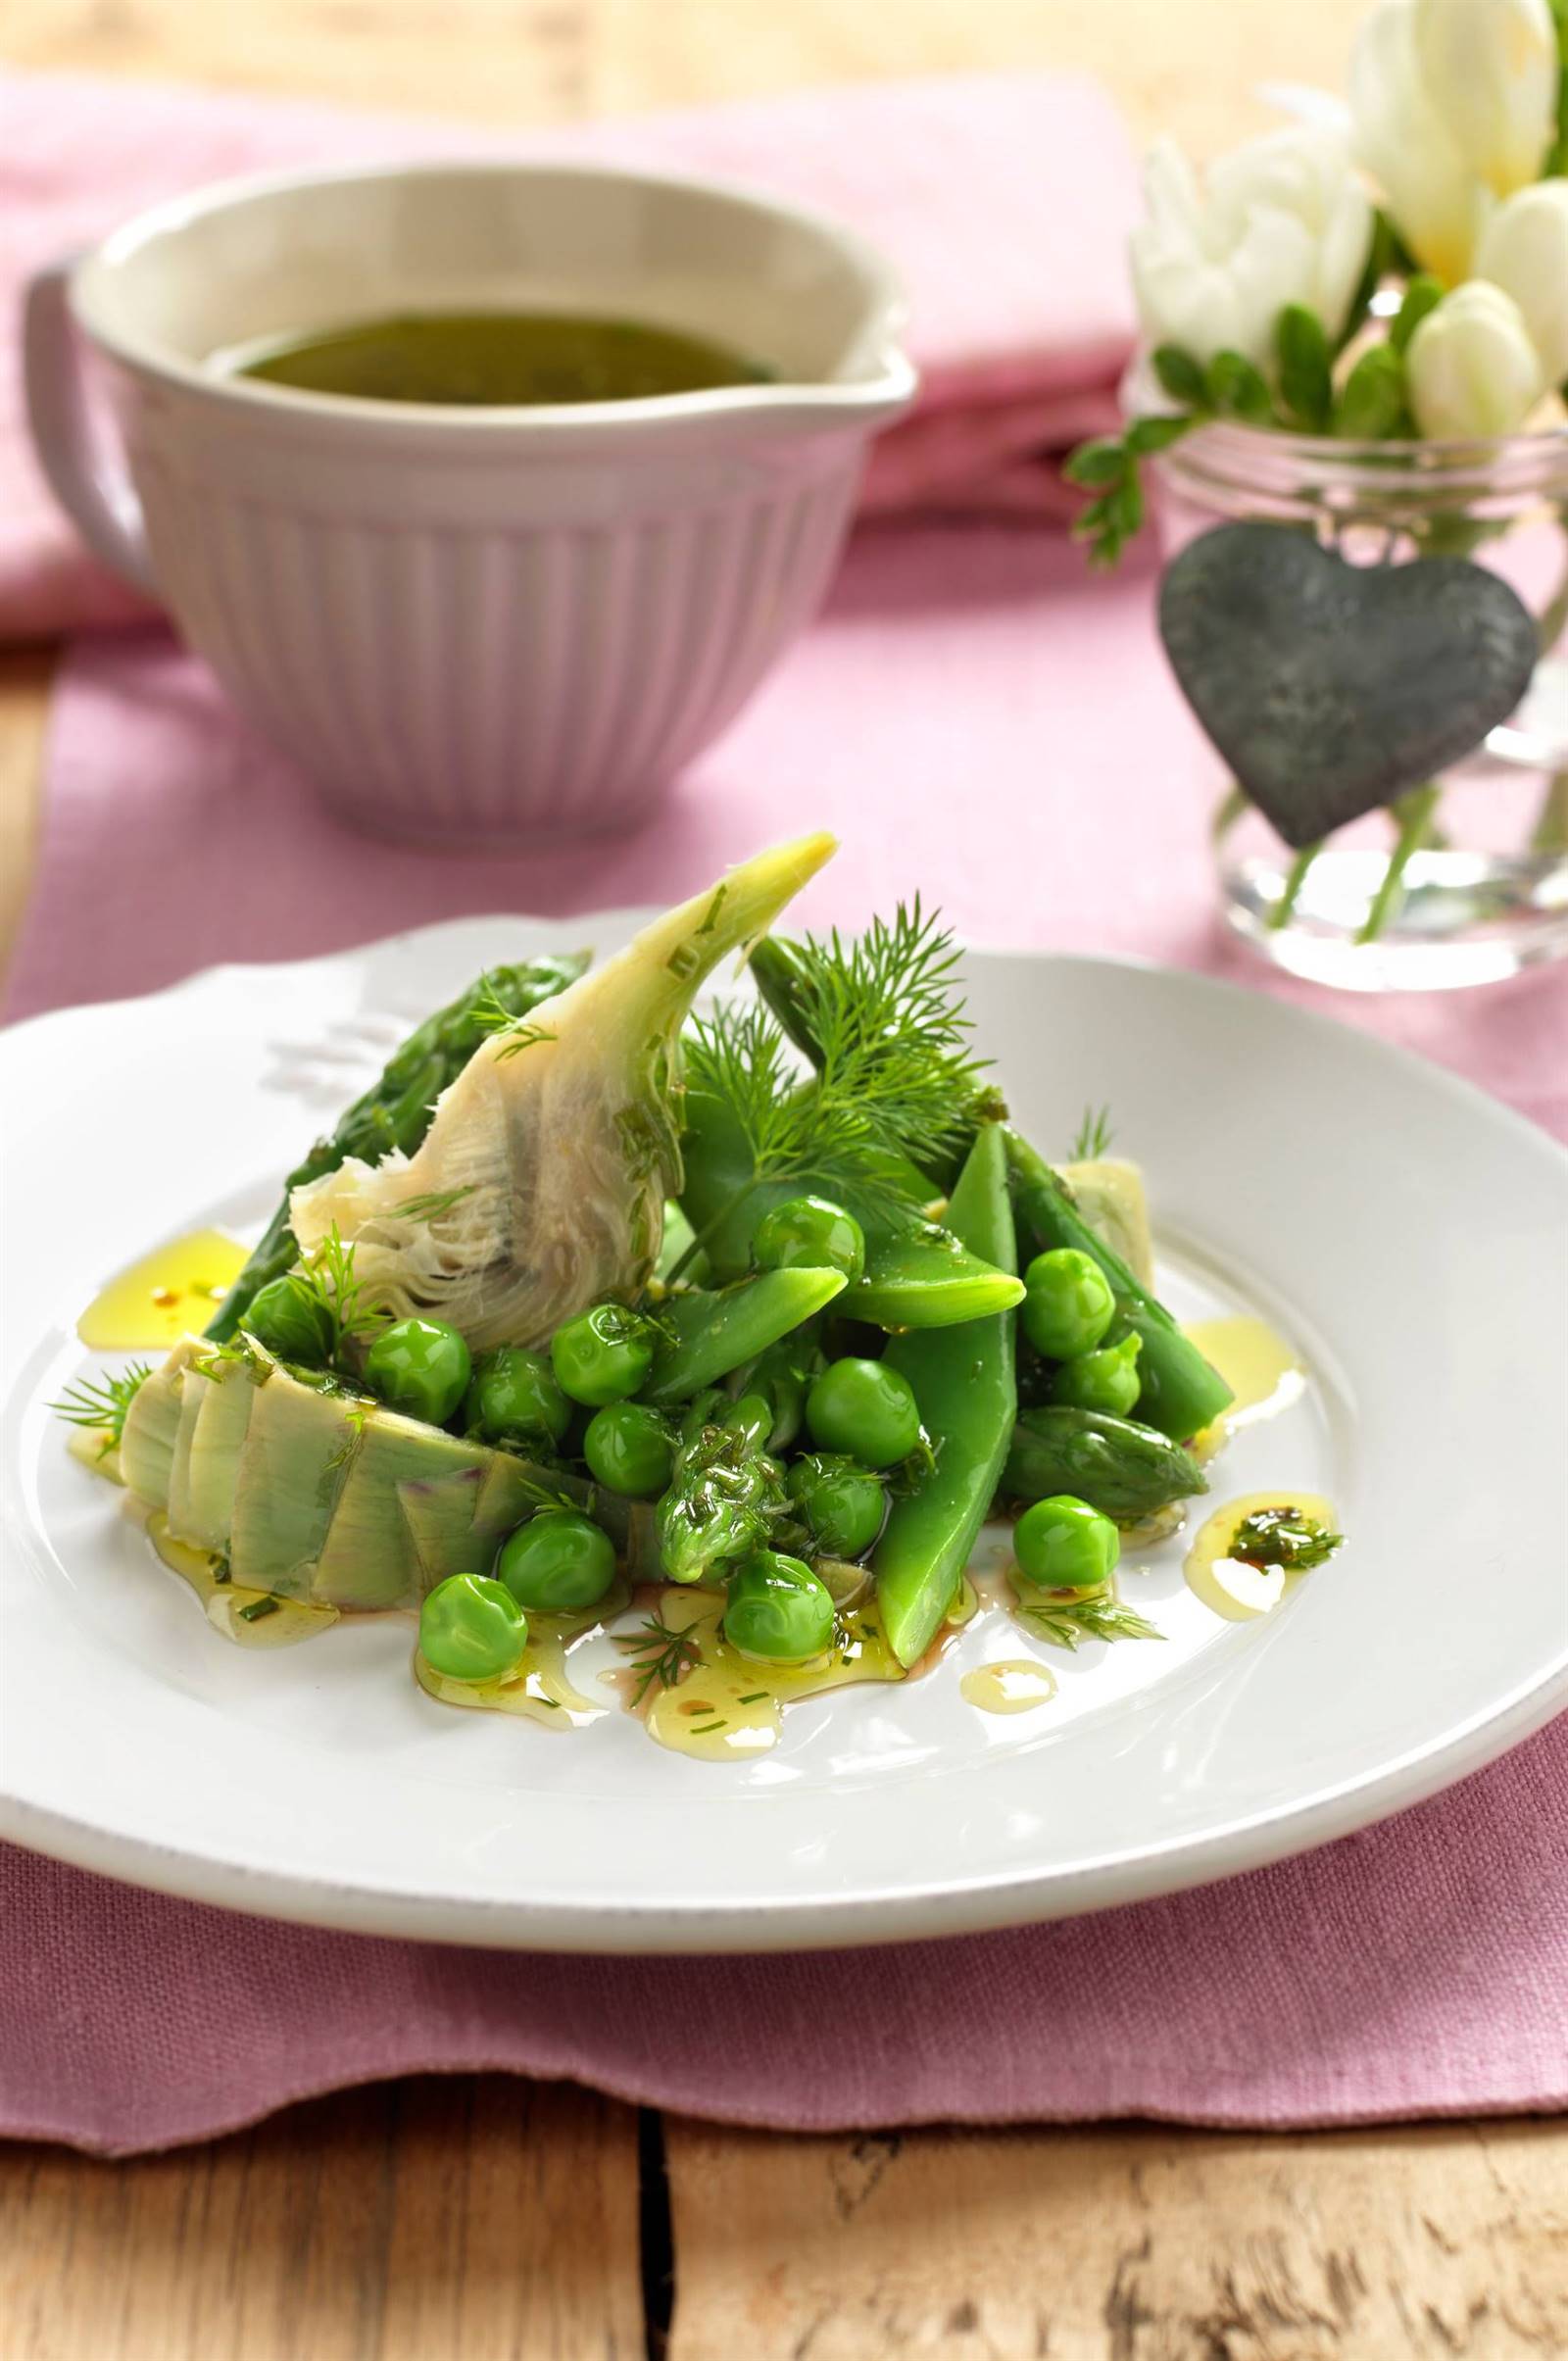 cenas-saludables-sin cocinar- menestra-alcachofas-judías-verdes-y-guisantes